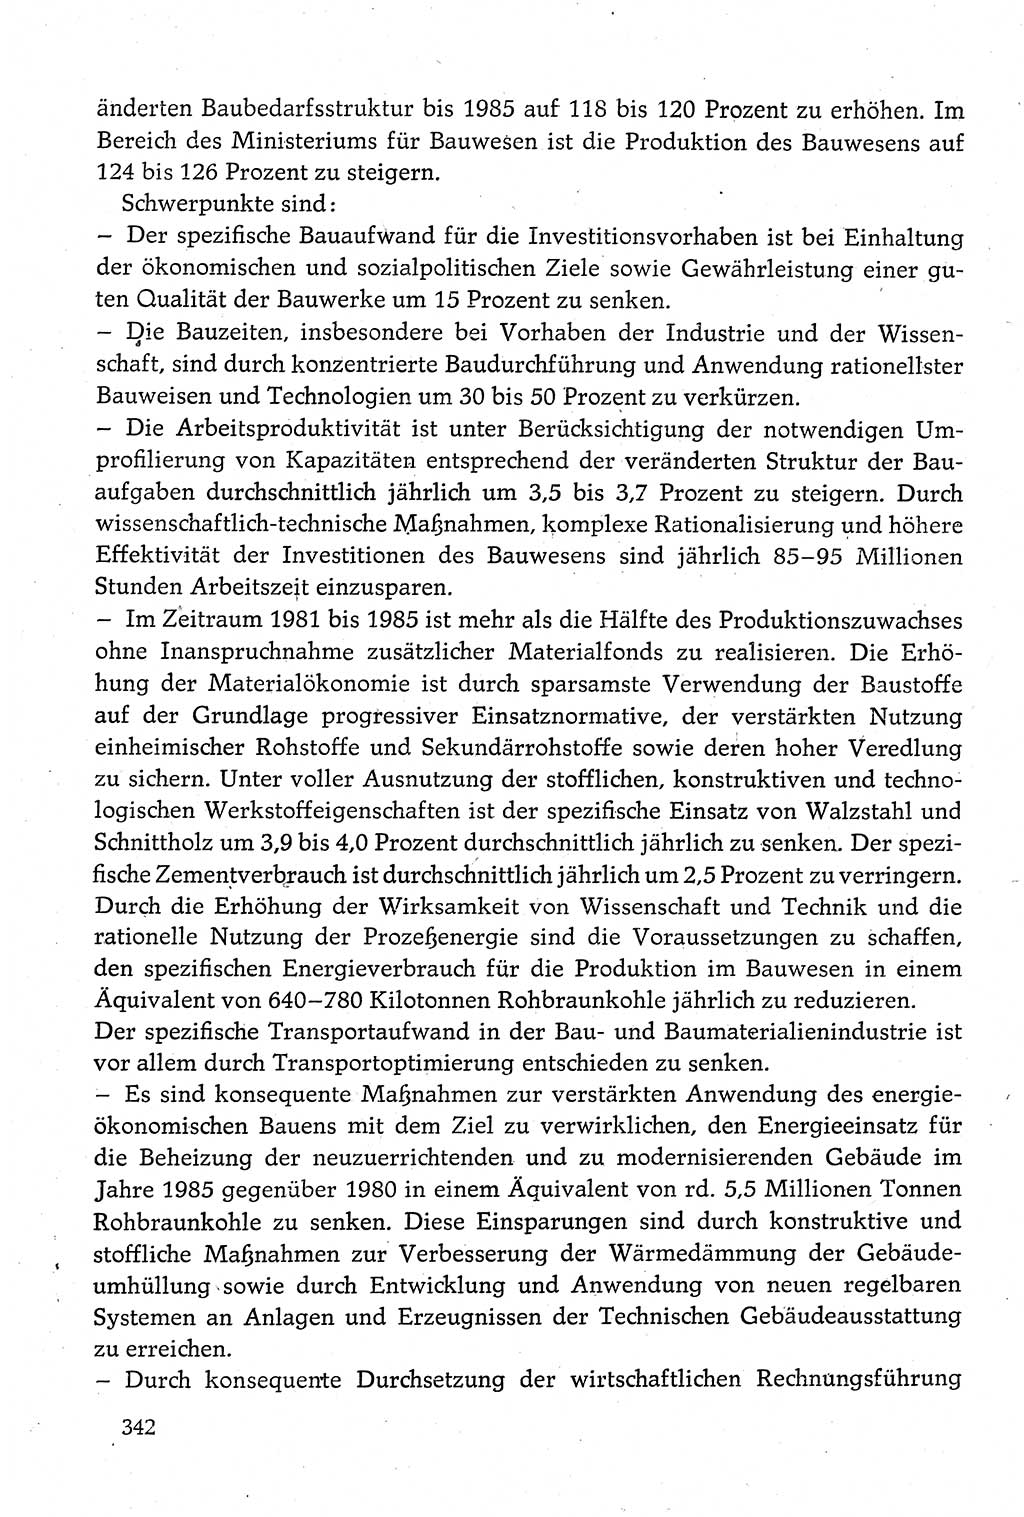 Dokumente der Sozialistischen Einheitspartei Deutschlands (SED) [Deutsche Demokratische Republik (DDR)] 1980-1981, Seite 342 (Dok. SED DDR 1980-1981, S. 342)